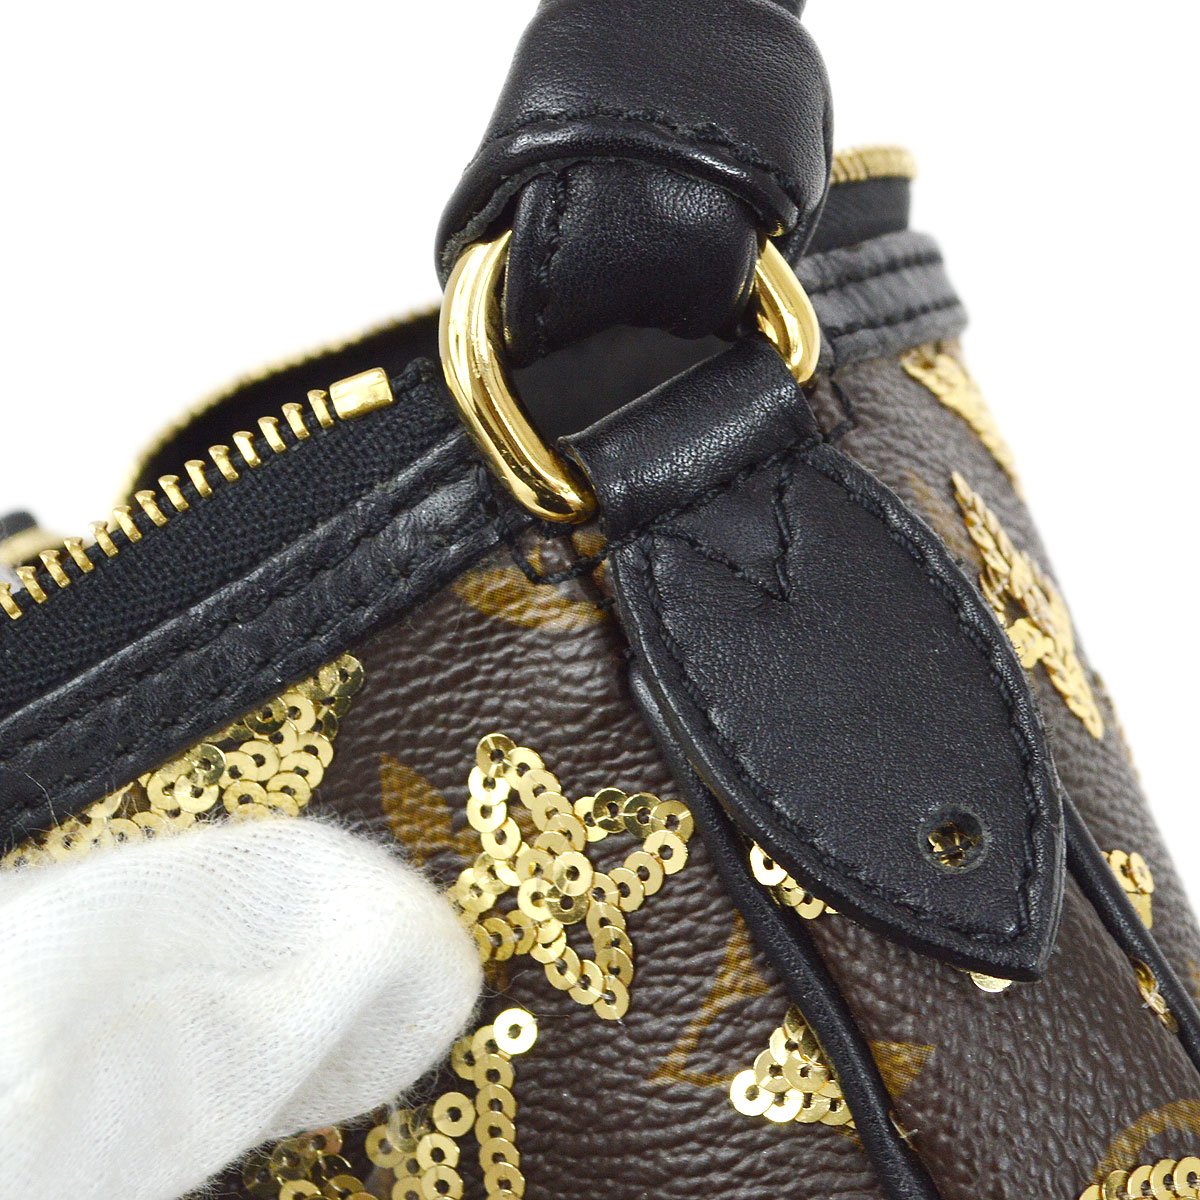 Louis Vuitton 2009 Mini Pochette Accessoires Hand Bag Eclipse M60125 83778